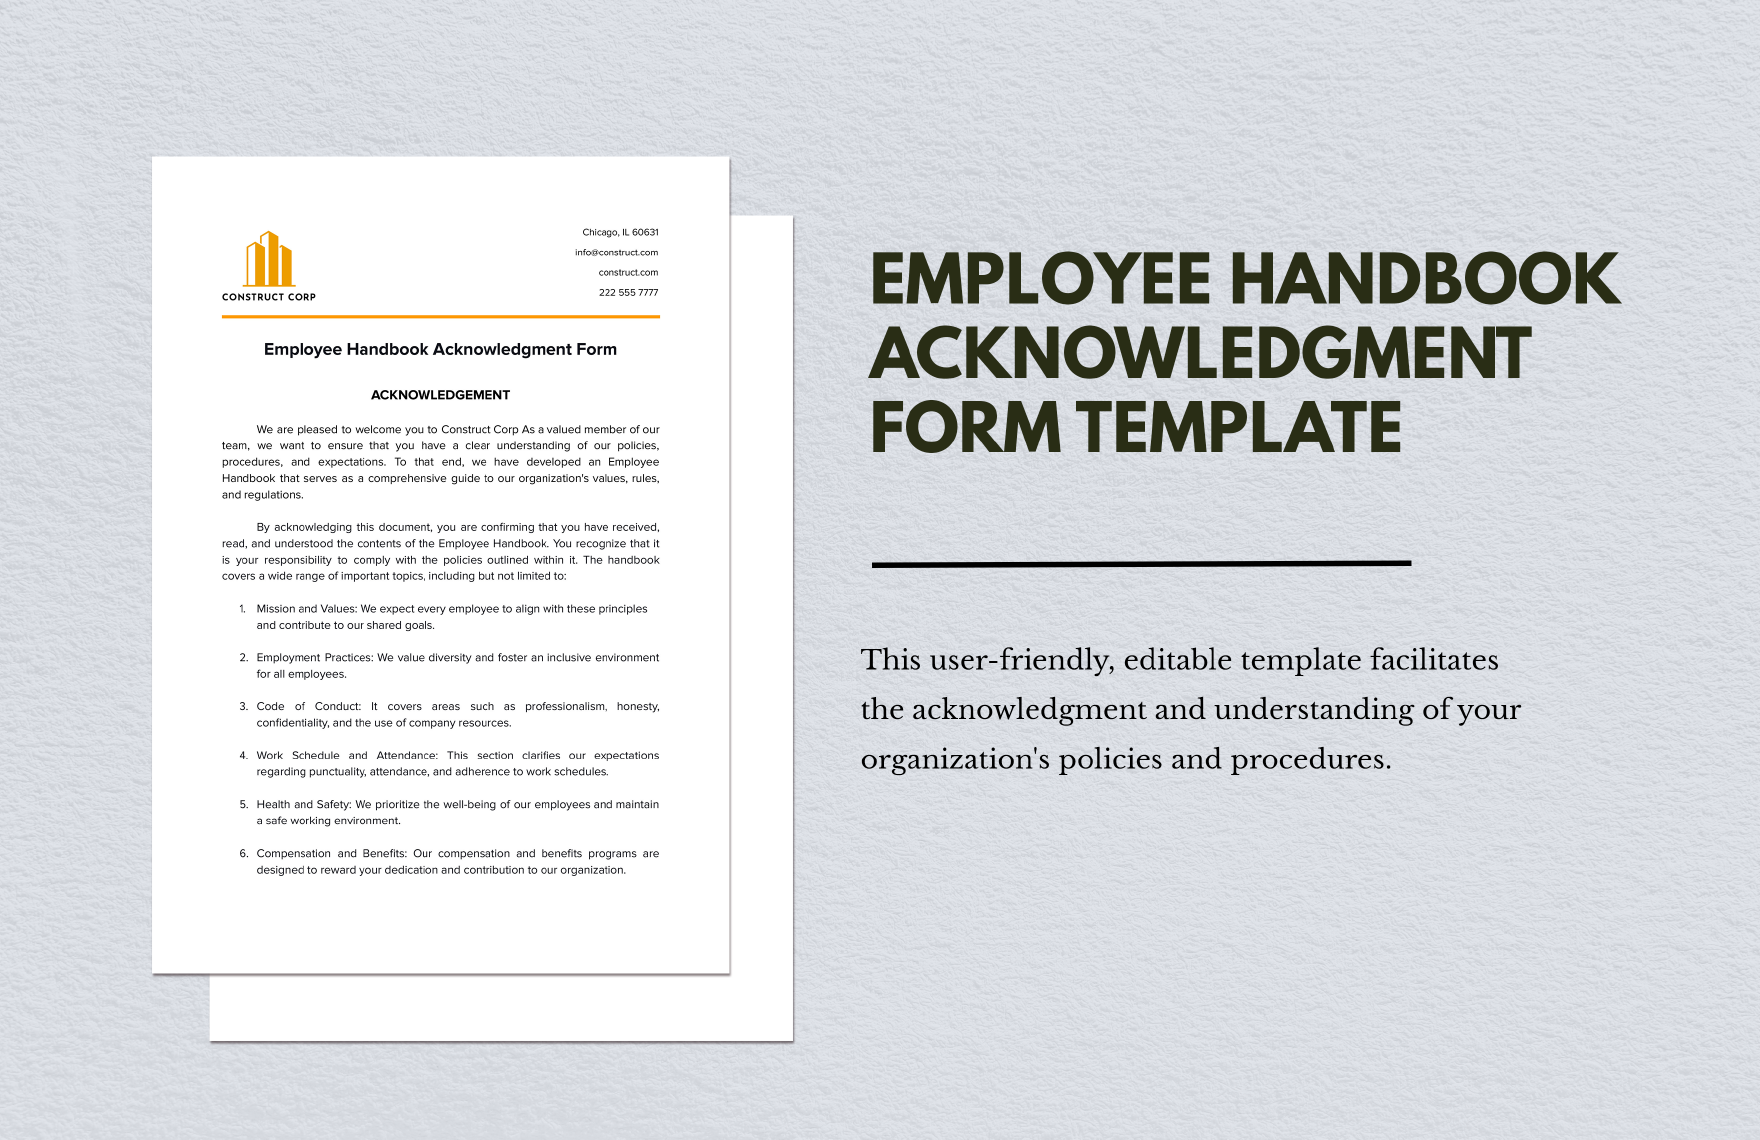 Employee Handbook Acknowledgment Form in Word, Google Docs